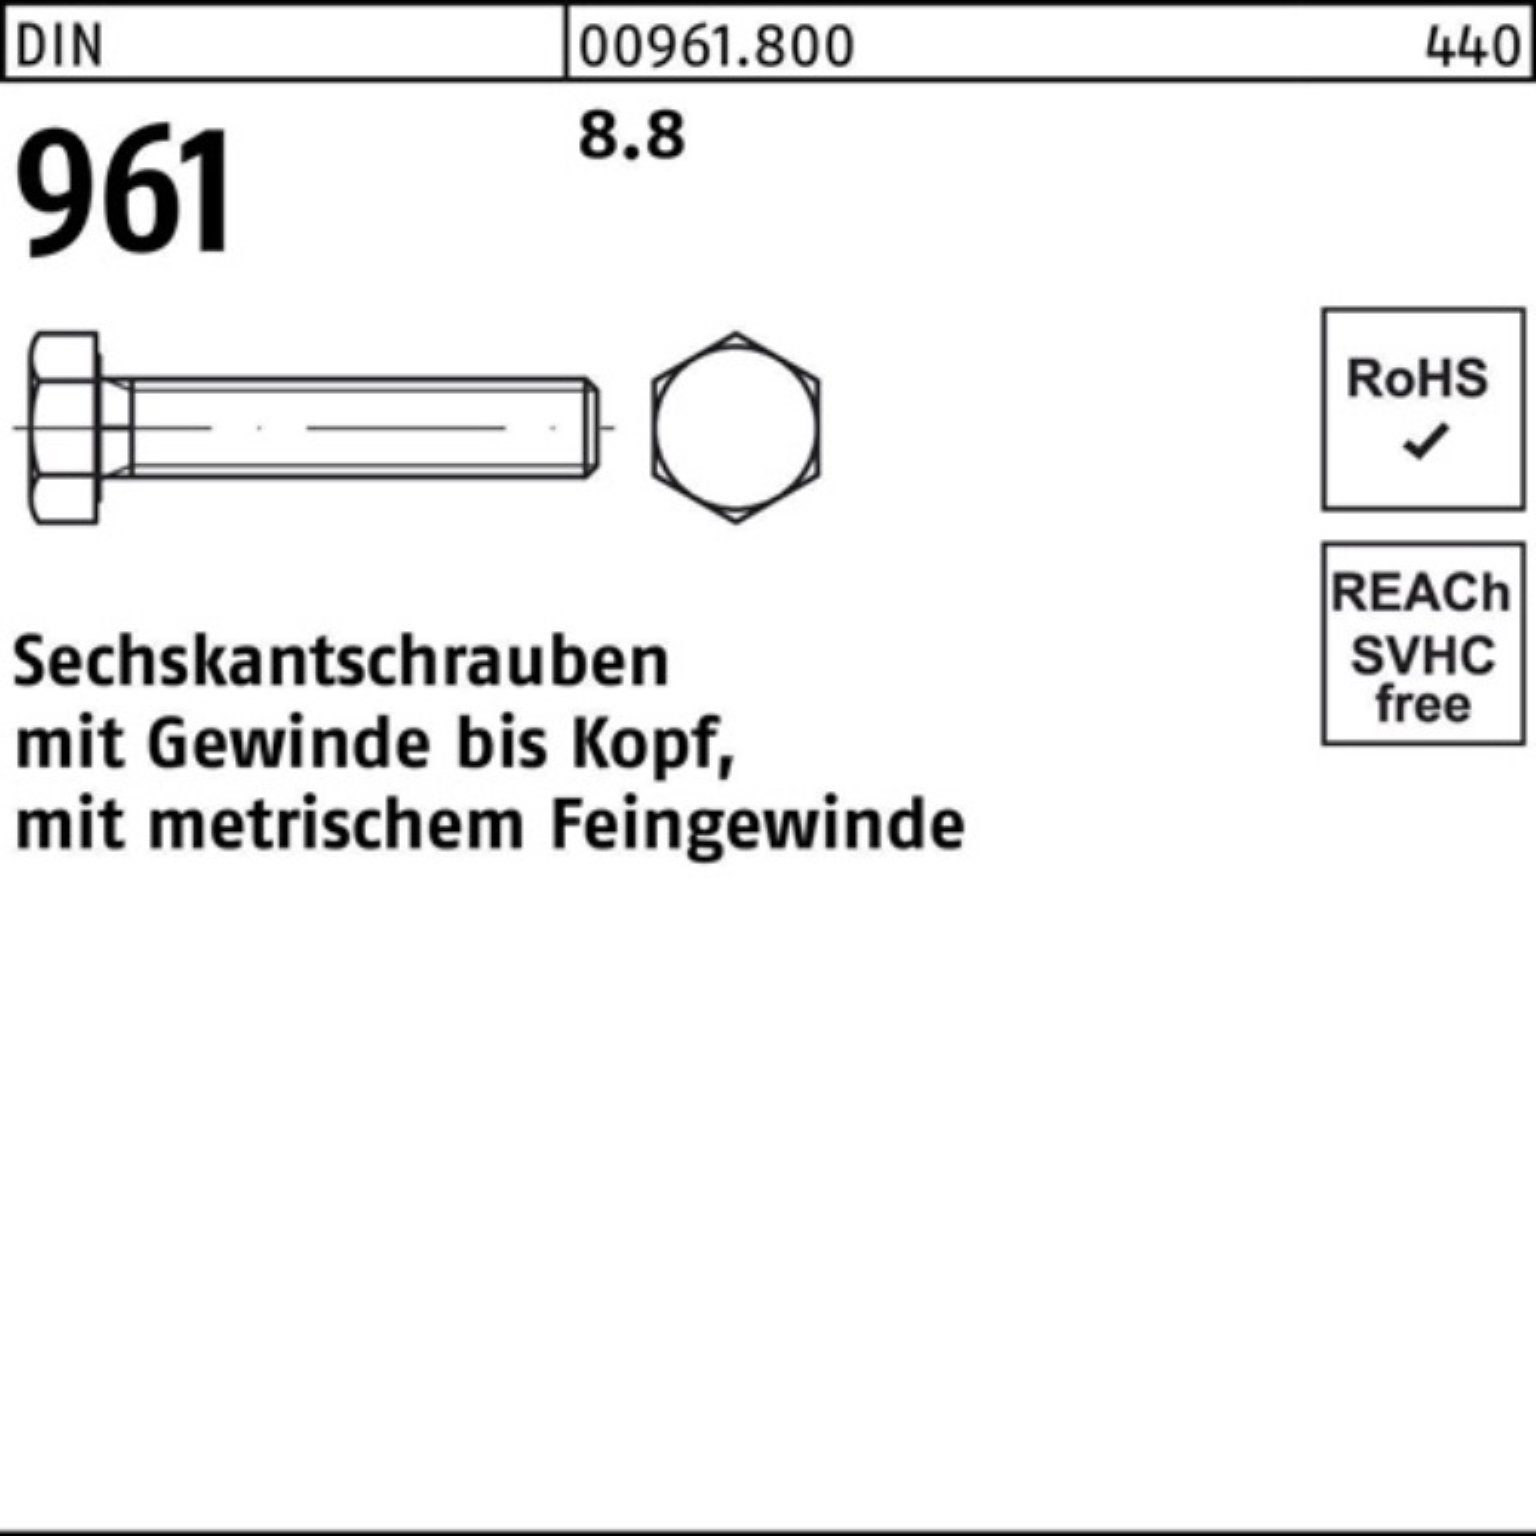 Reyher Stück Sechskantschraube 961 100er DIN 25 M18x1,5x140 8.8 Sechskantschraube DIN VG Pack